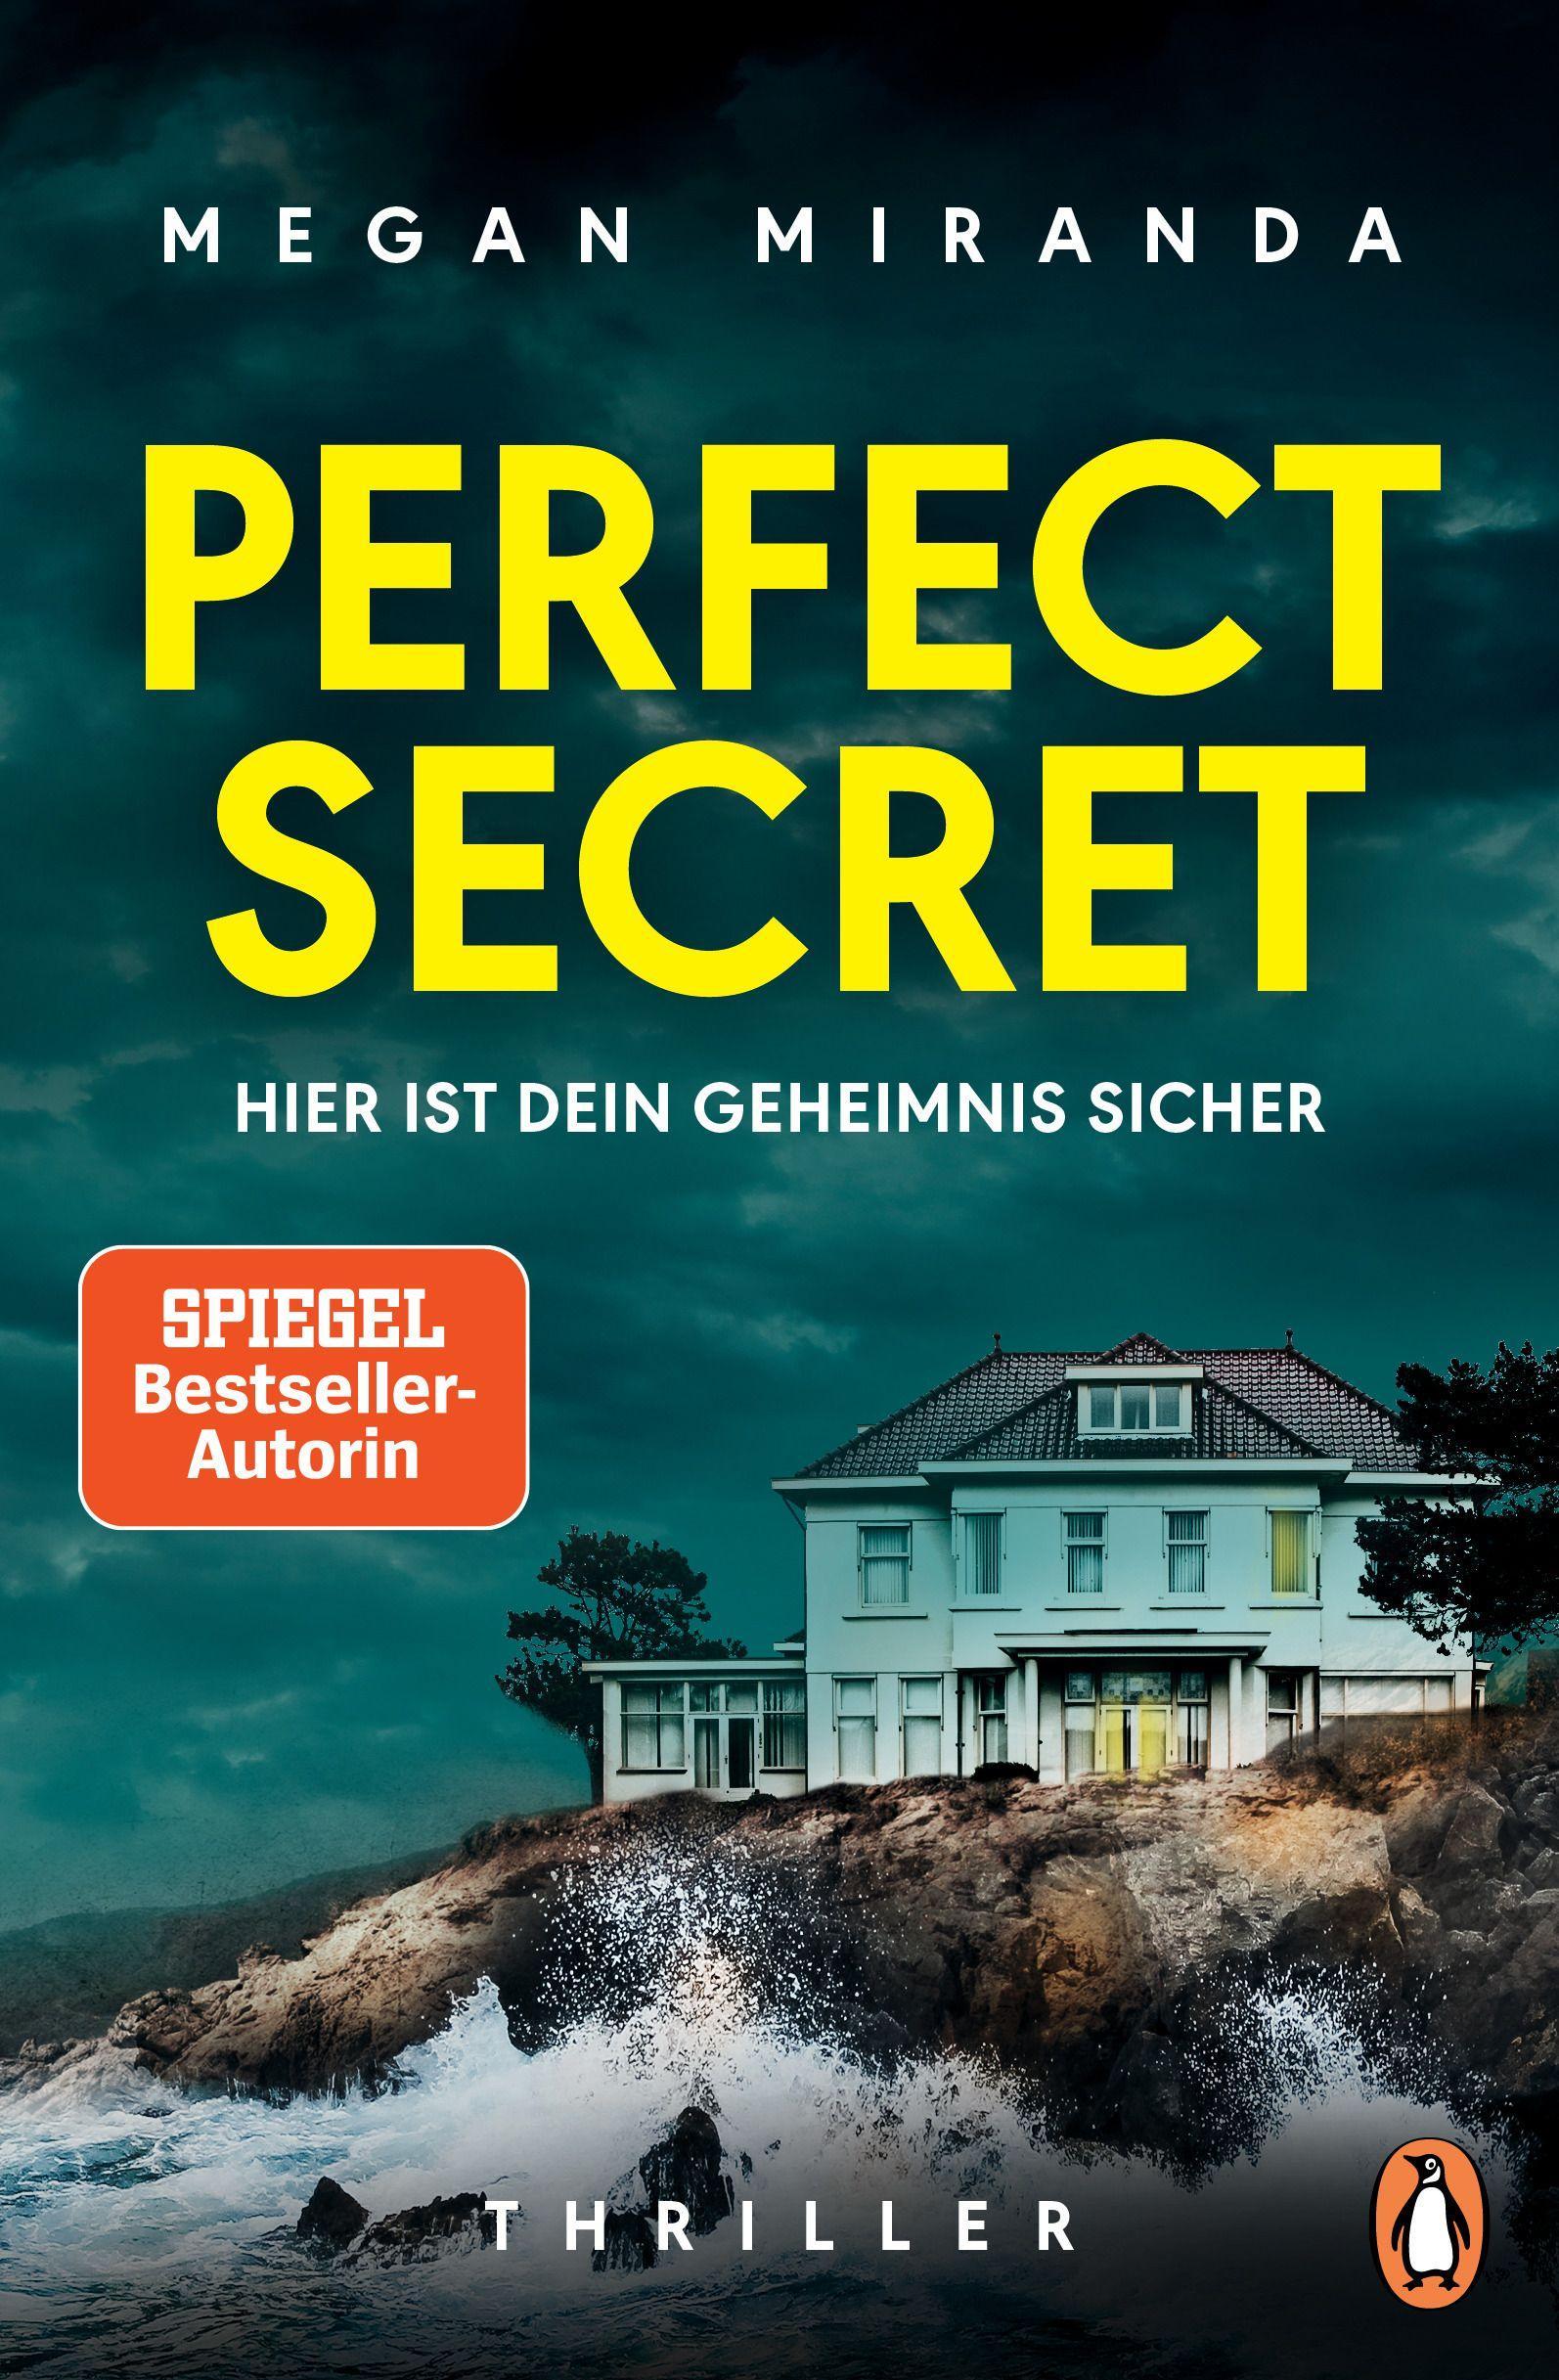 Perfect Secret – Hier ist Dein Geheimnis sicher Thriller – "Der ultimative Thriller!" (Reese Witherspoon)